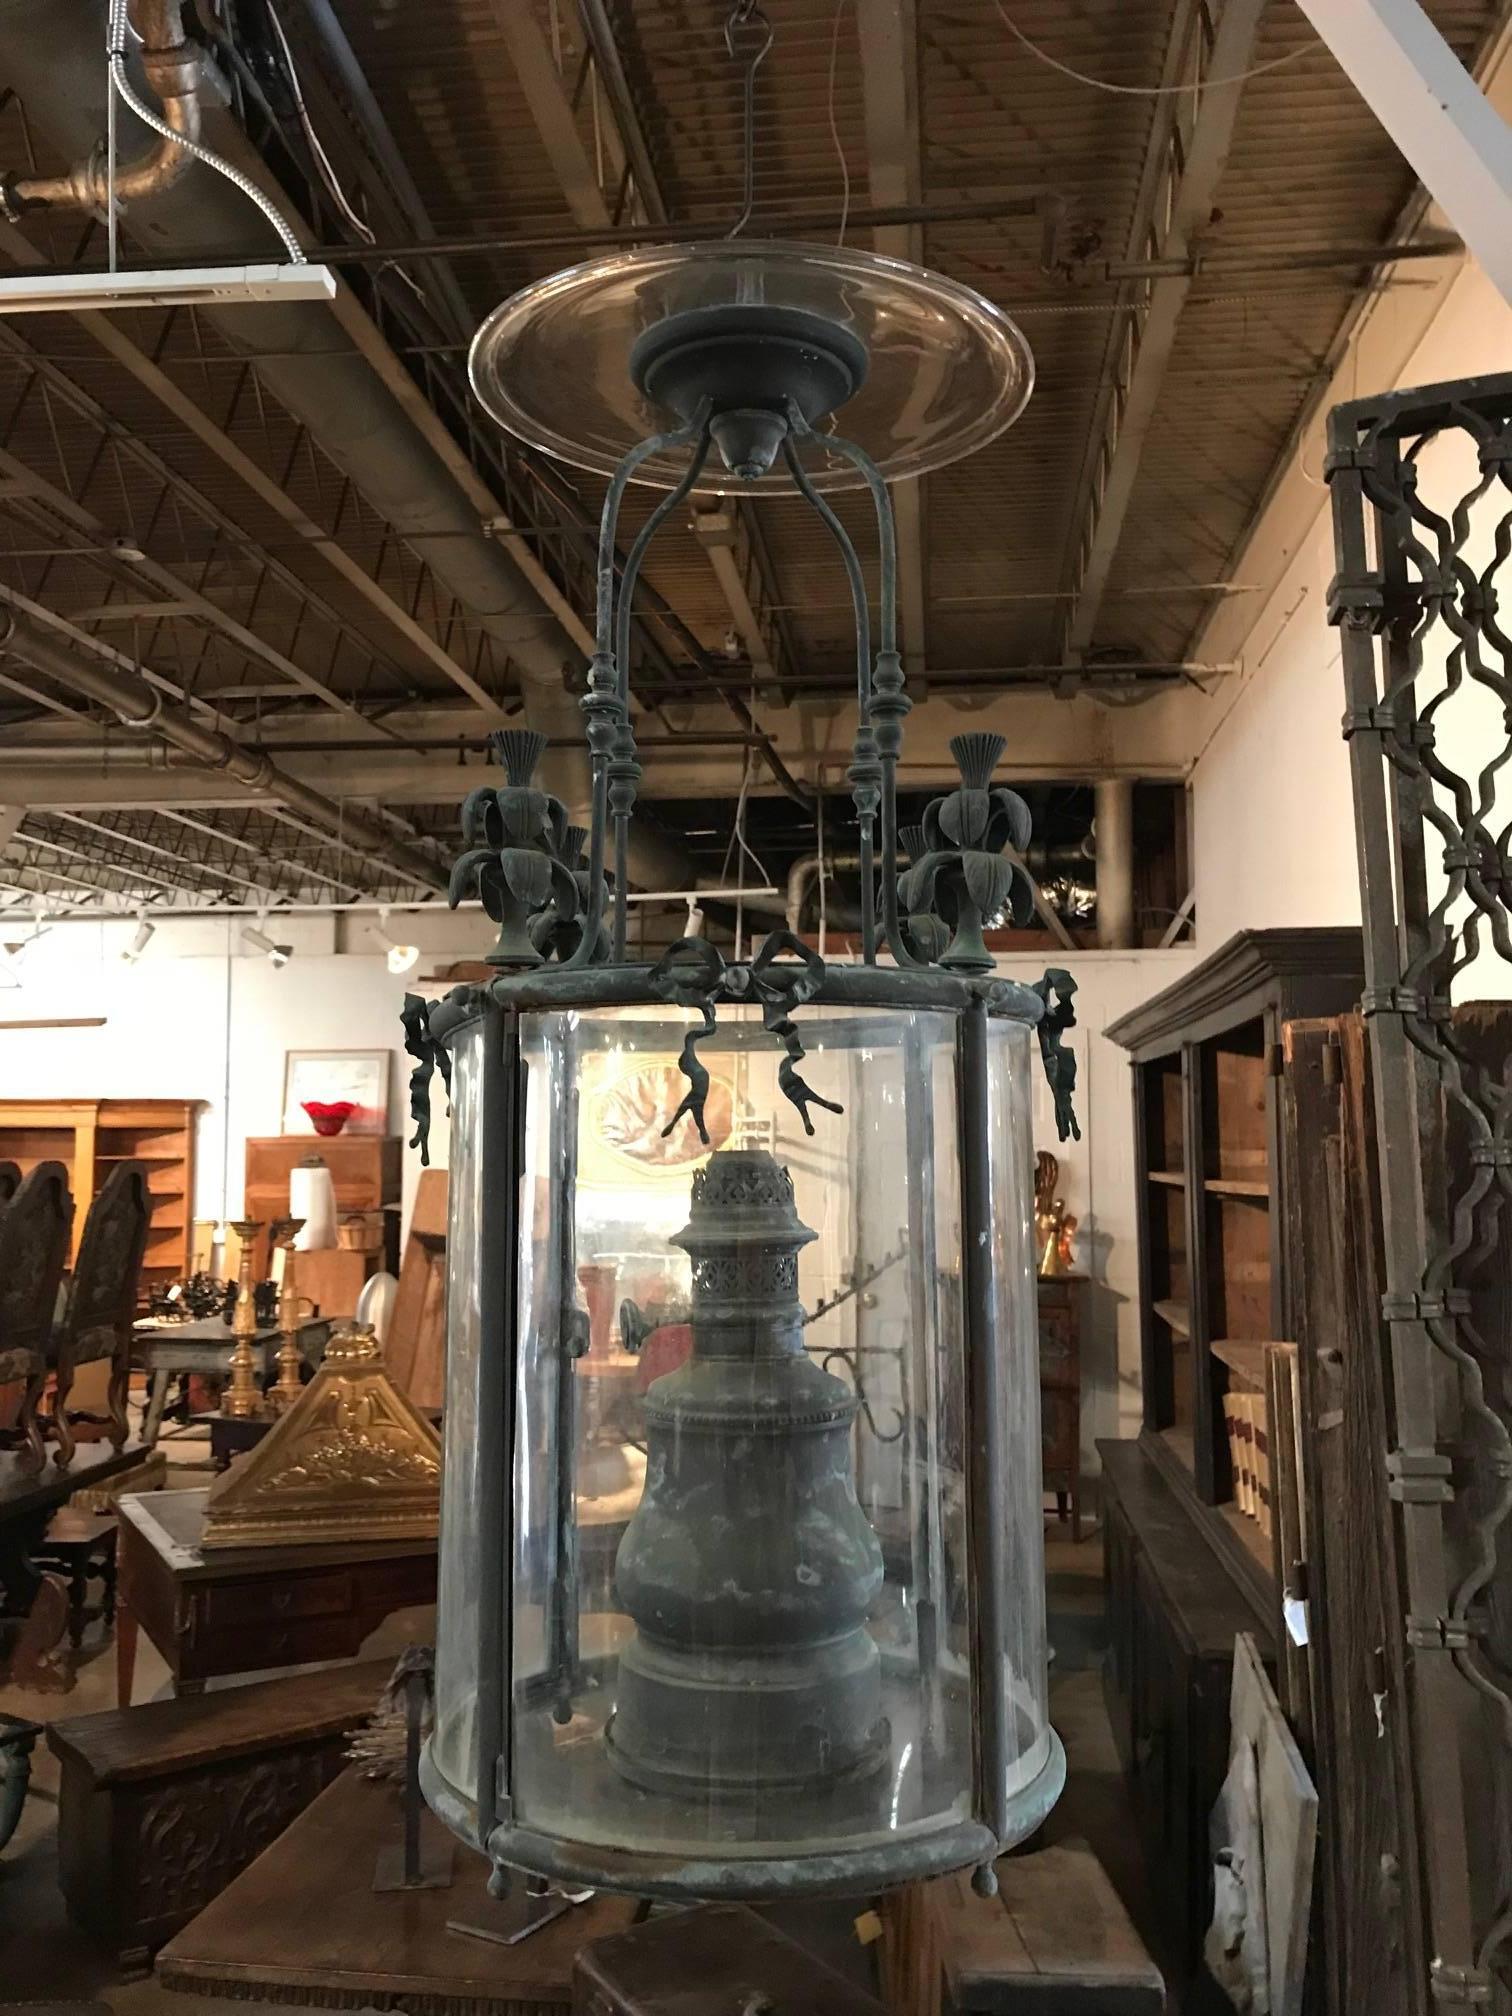 Une remarquable et sensationnelle lanterne française du milieu du XIXe siècle. Merveilleusement réalisé en bronze, cuivre et verre. La lanterne est dans un état exceptionnel, conservant même sa plaque réflectrice supérieure en verre. Un luminaire